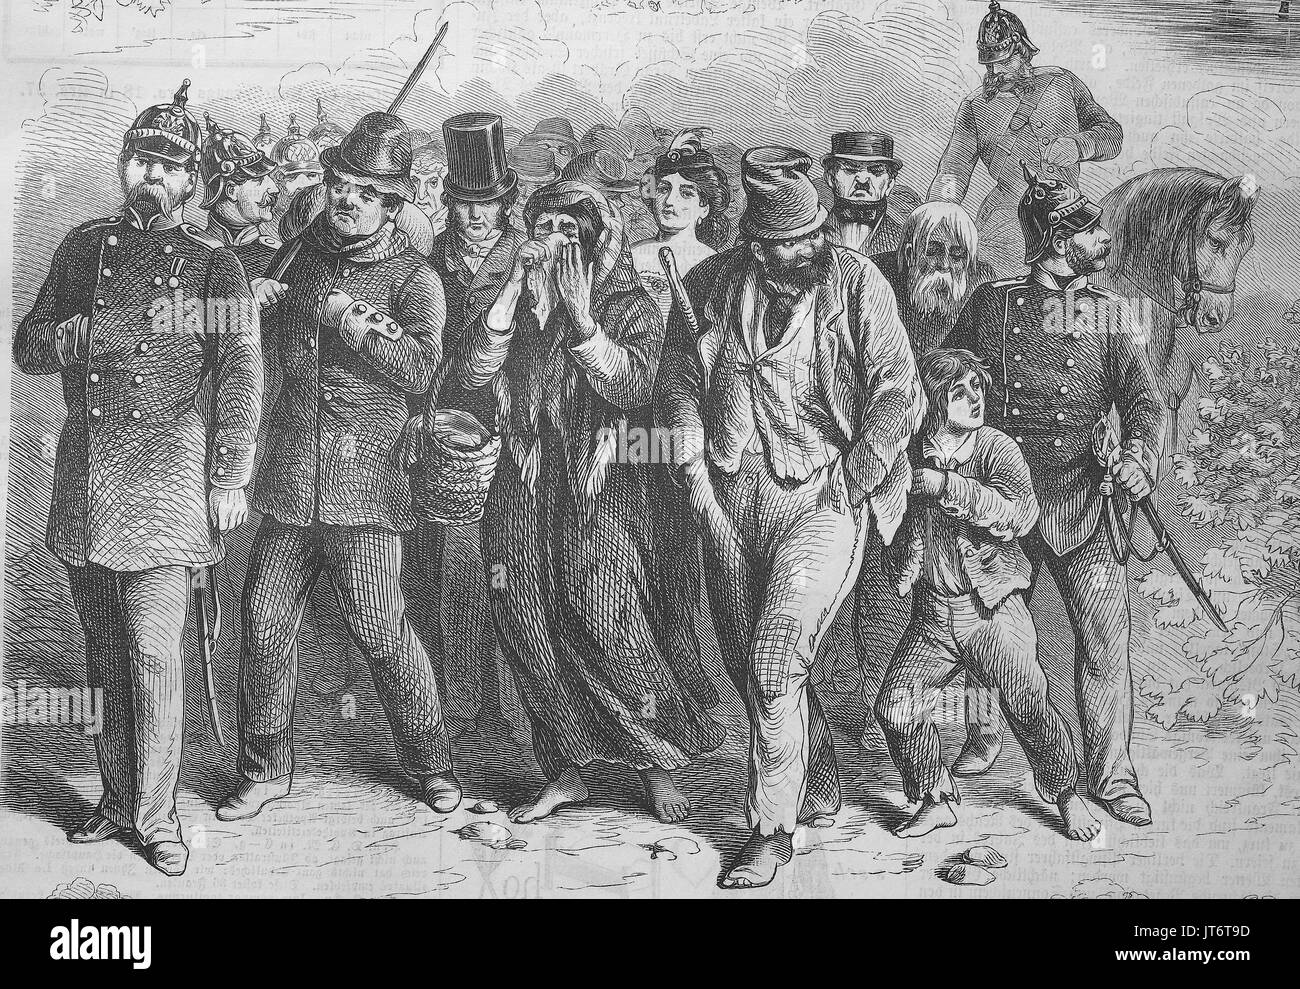 Un raid nel Tiergarten di Berlino. I poliziotti hanno arrestato mendicanti e vagabondi, Germania, digitale migliorata la riproduzione di un immagine pubblicata tra 1880 - 1885 Foto Stock